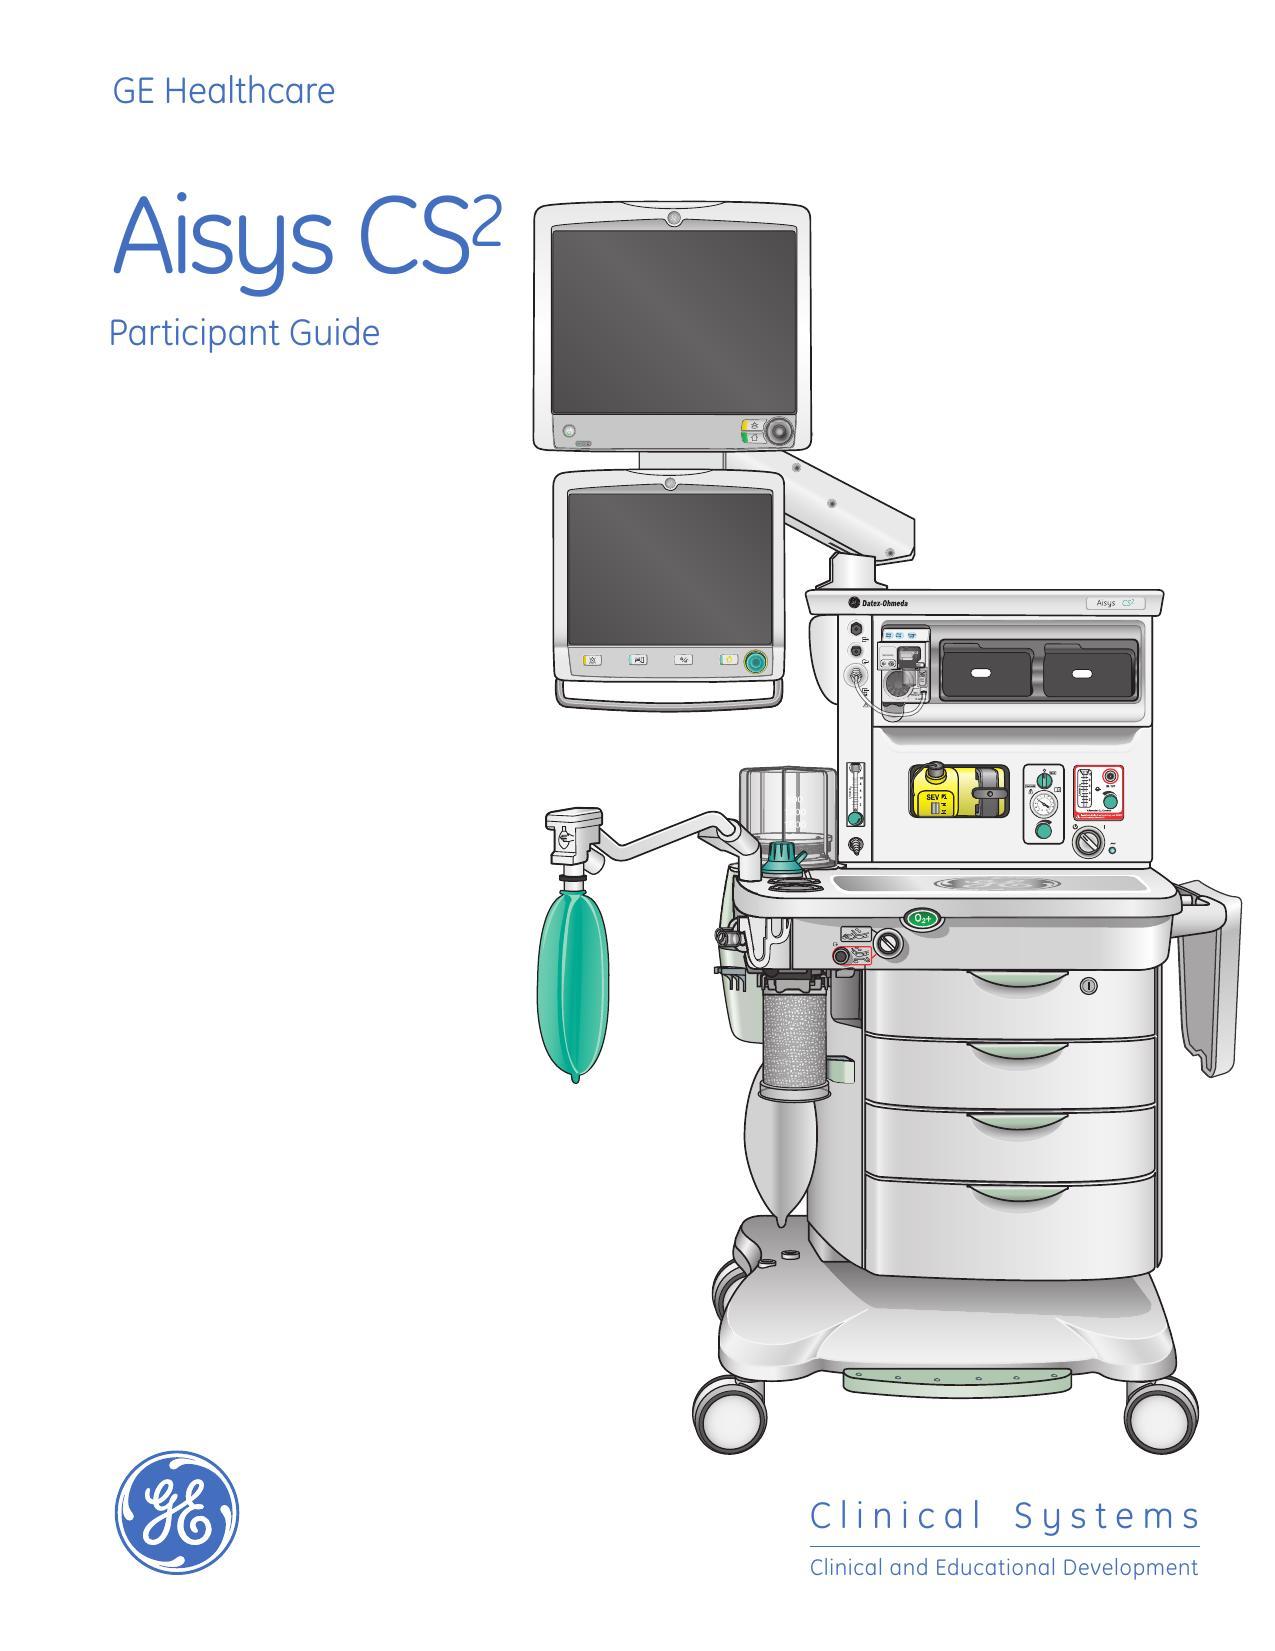 aisys-cs2-participant-guide.pdf